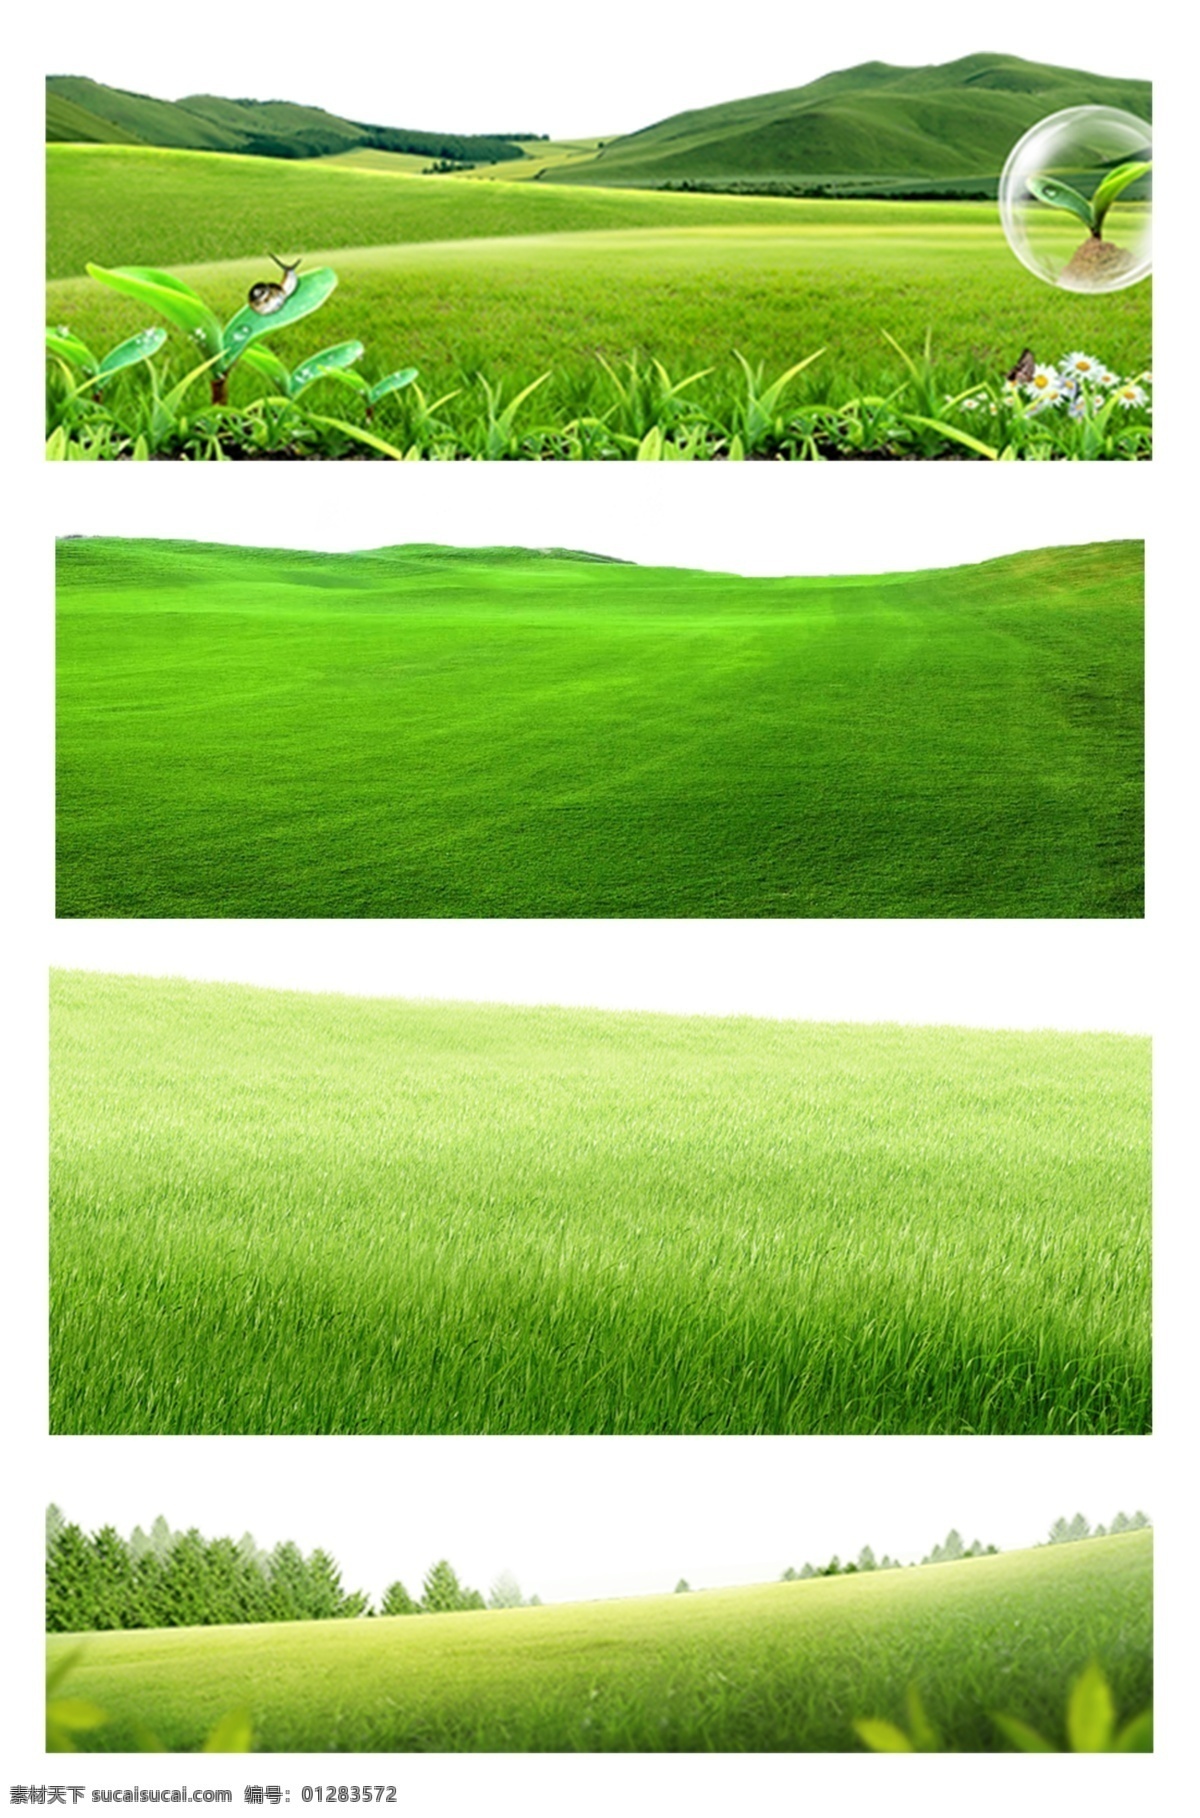 草地 绿色草丛 矢量草丛 小草 草堆 平面设计 绿草 茂盛草丛 草丛 卡通草丛